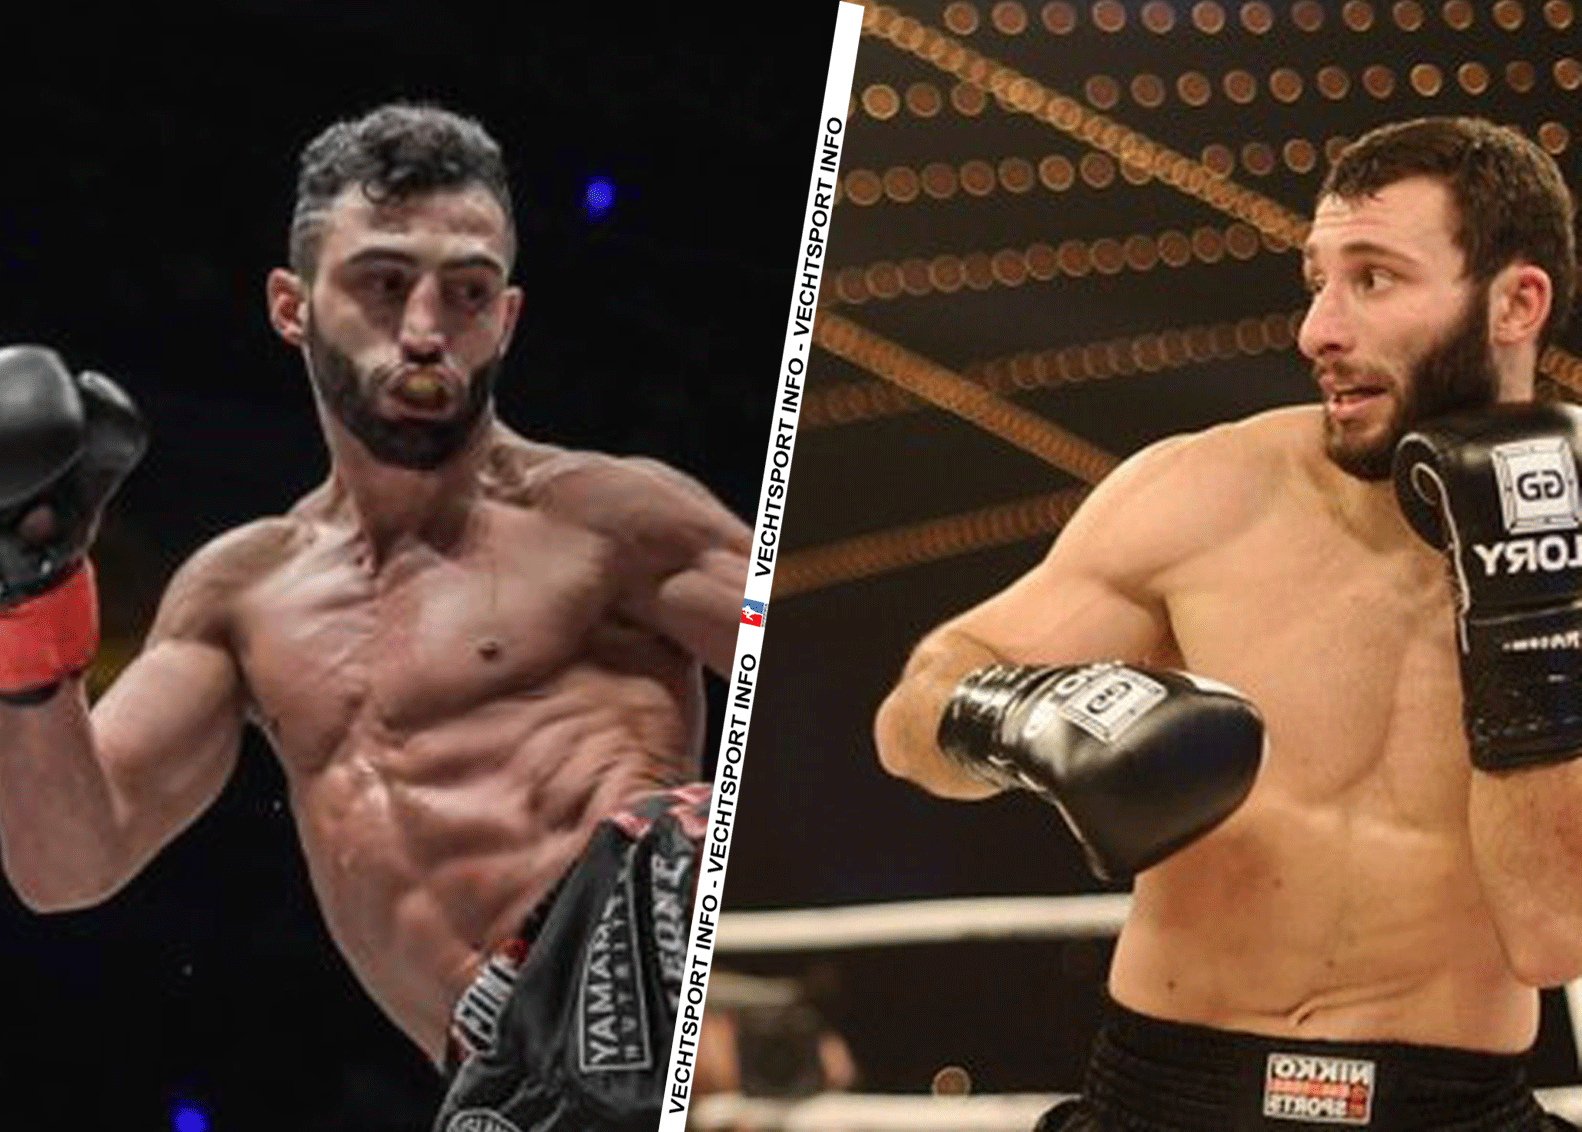 Petrosyan in wraakgevecht met Kiria bij ONE Championship